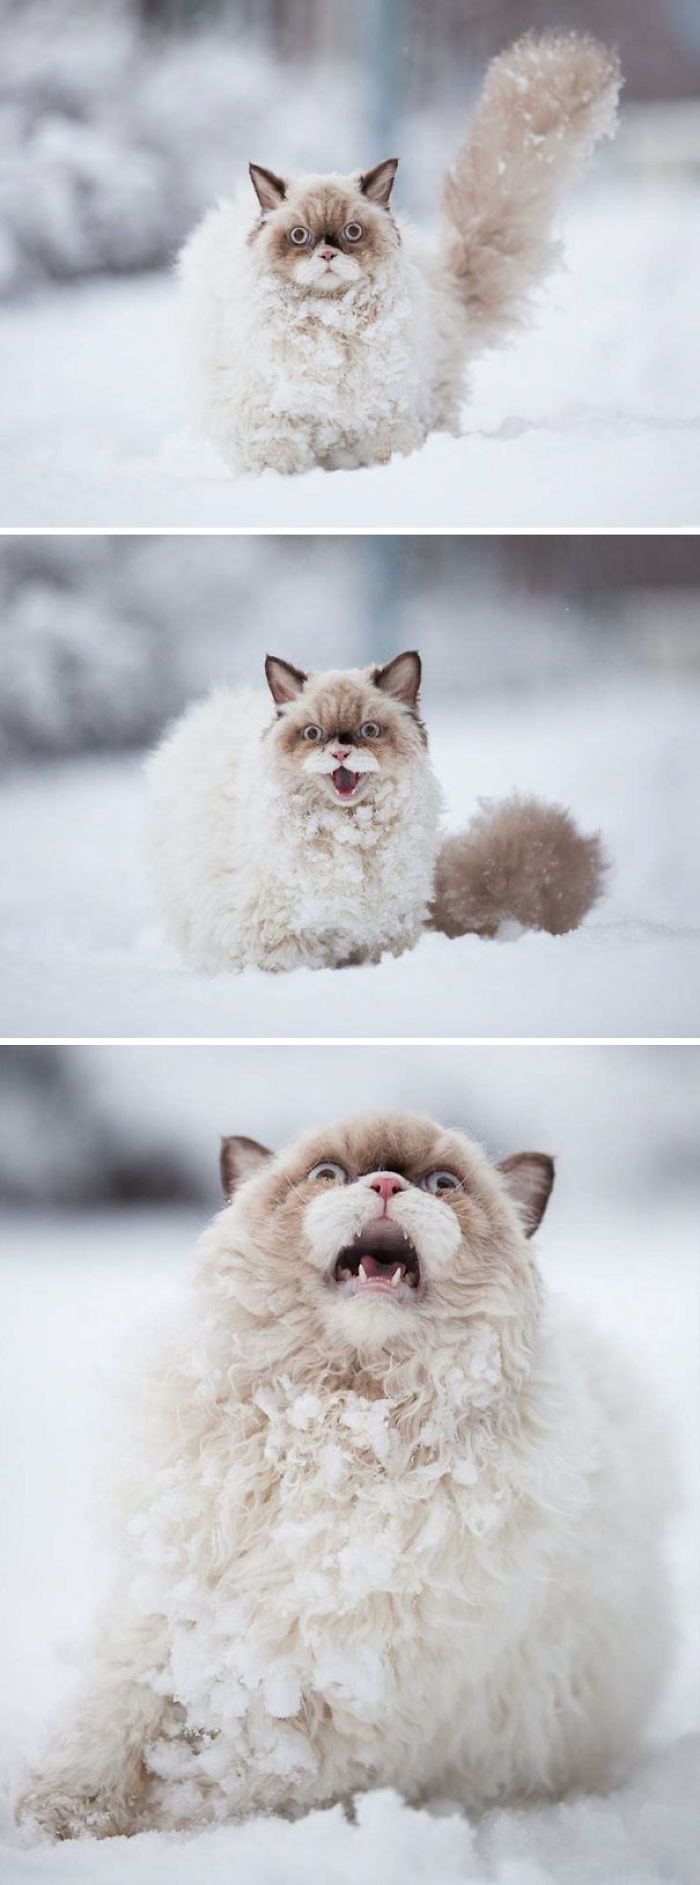 Gato descubriendo la nieve